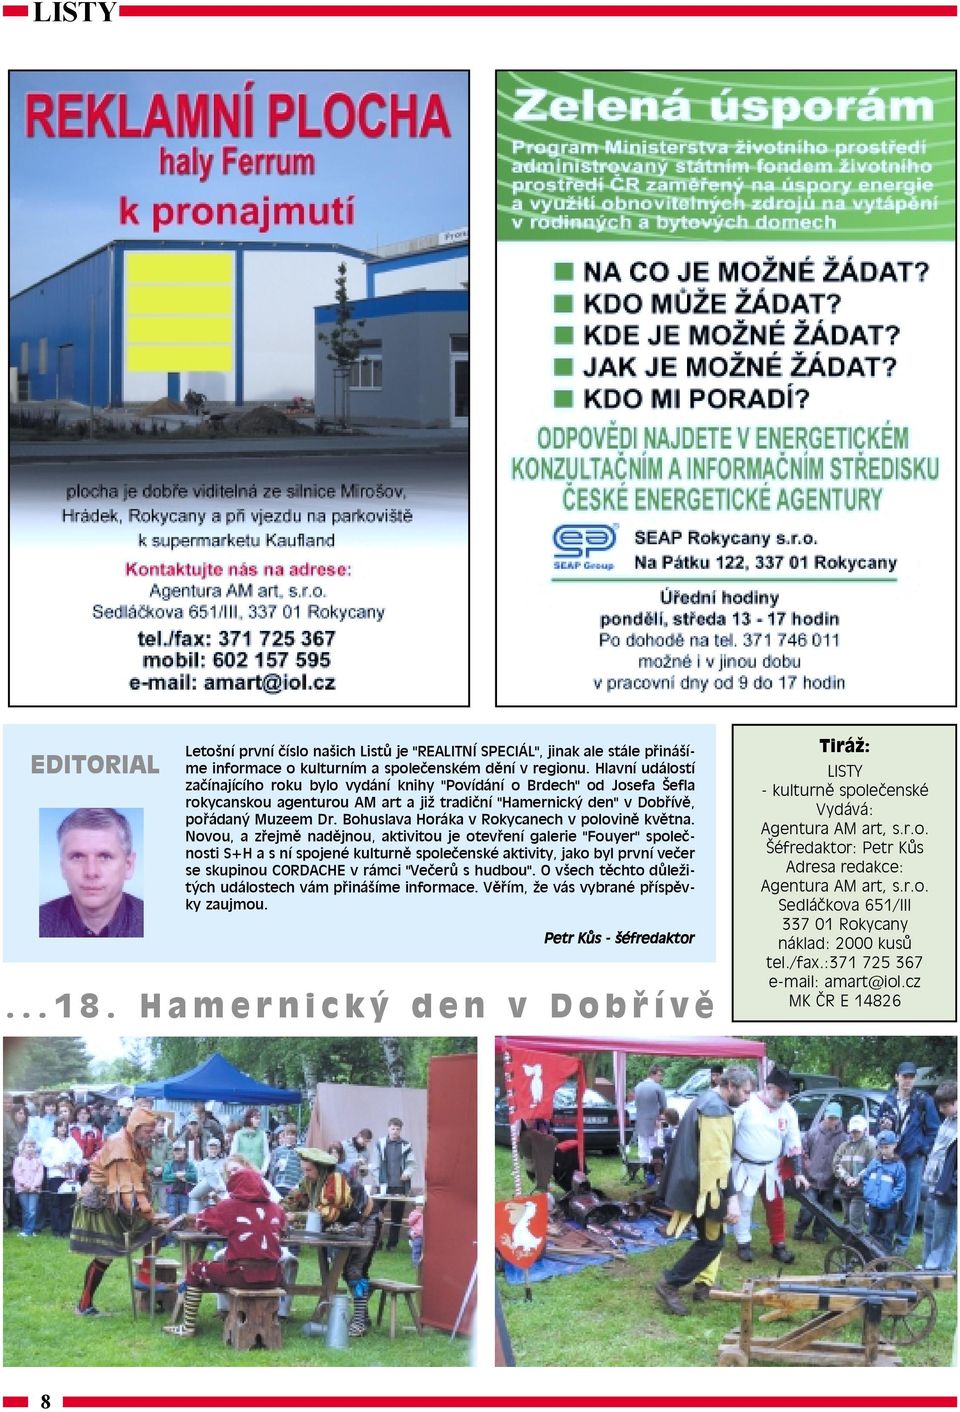 Bohuslava Horáka v Rokycanech v polovině května.